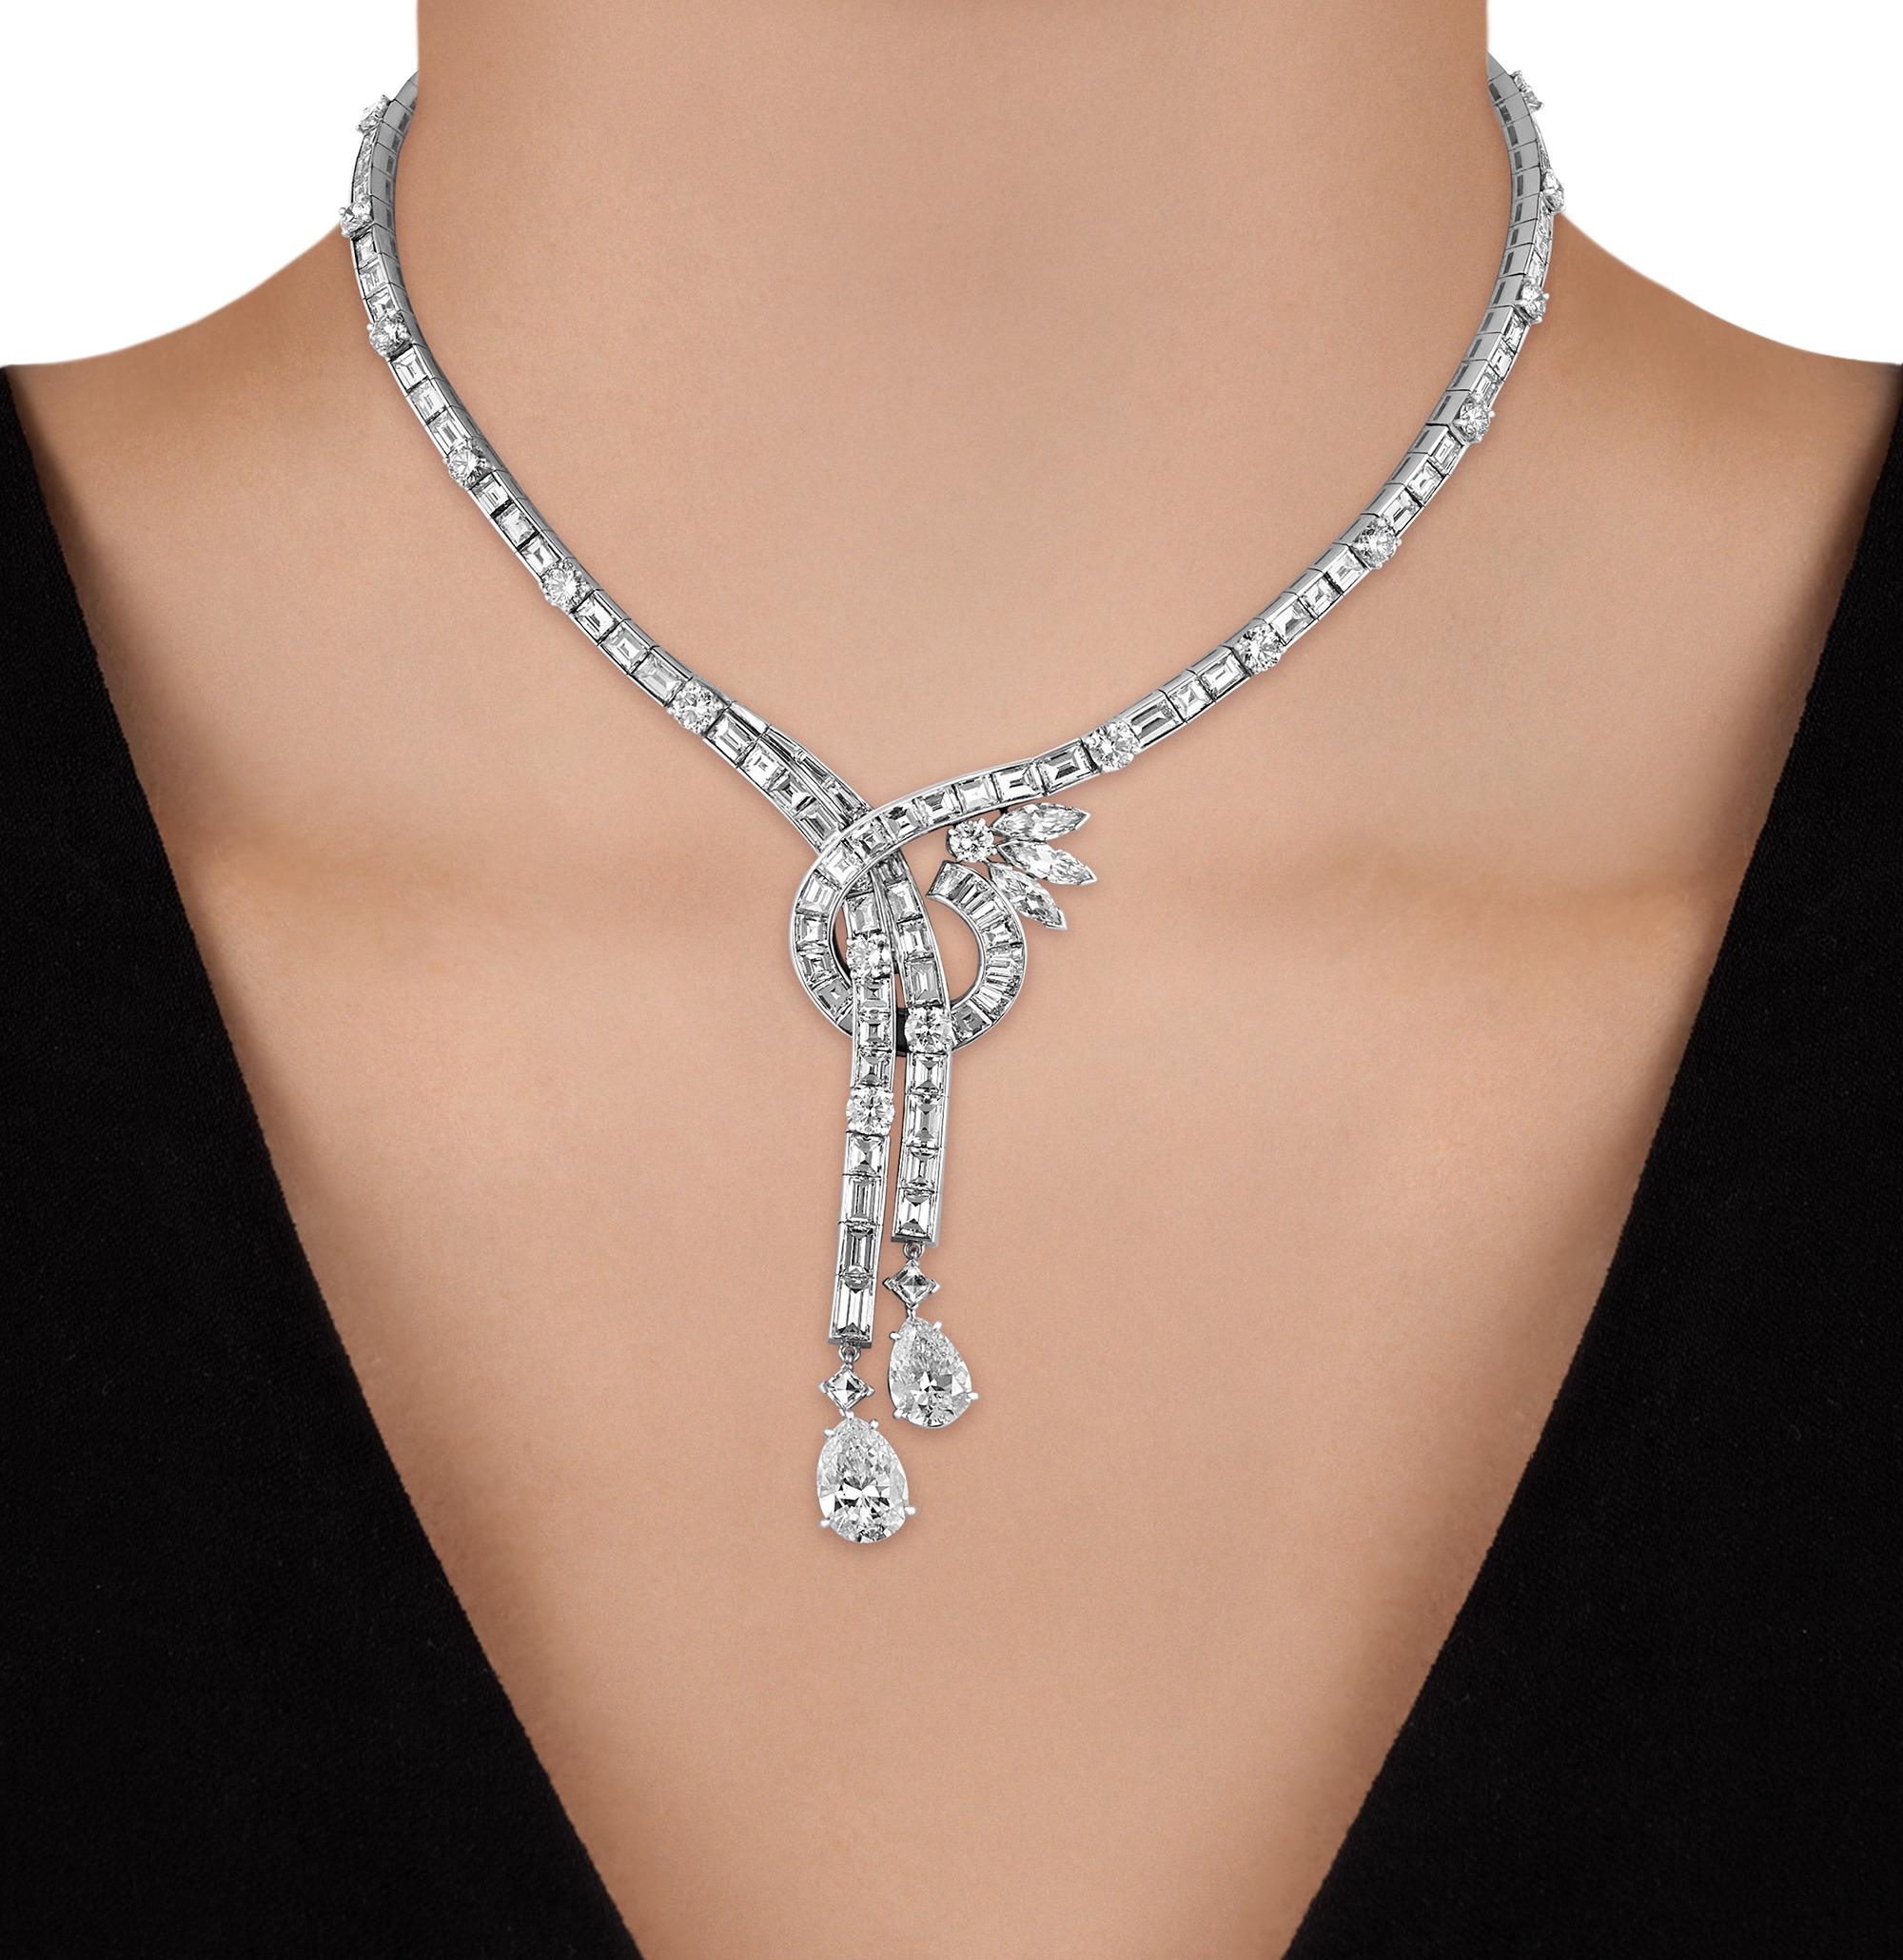 Dieses atemberaubende Collier im Lariat-Stil strahlt romantische Eleganz aus und funkelt mit erstaunlichen 36,77 Karat weißer Diamanten. Die zarte Rundung des Colliers ist mit einer Reihe von Diamanten mit gemischtem Schliff besetzt, die in zwei